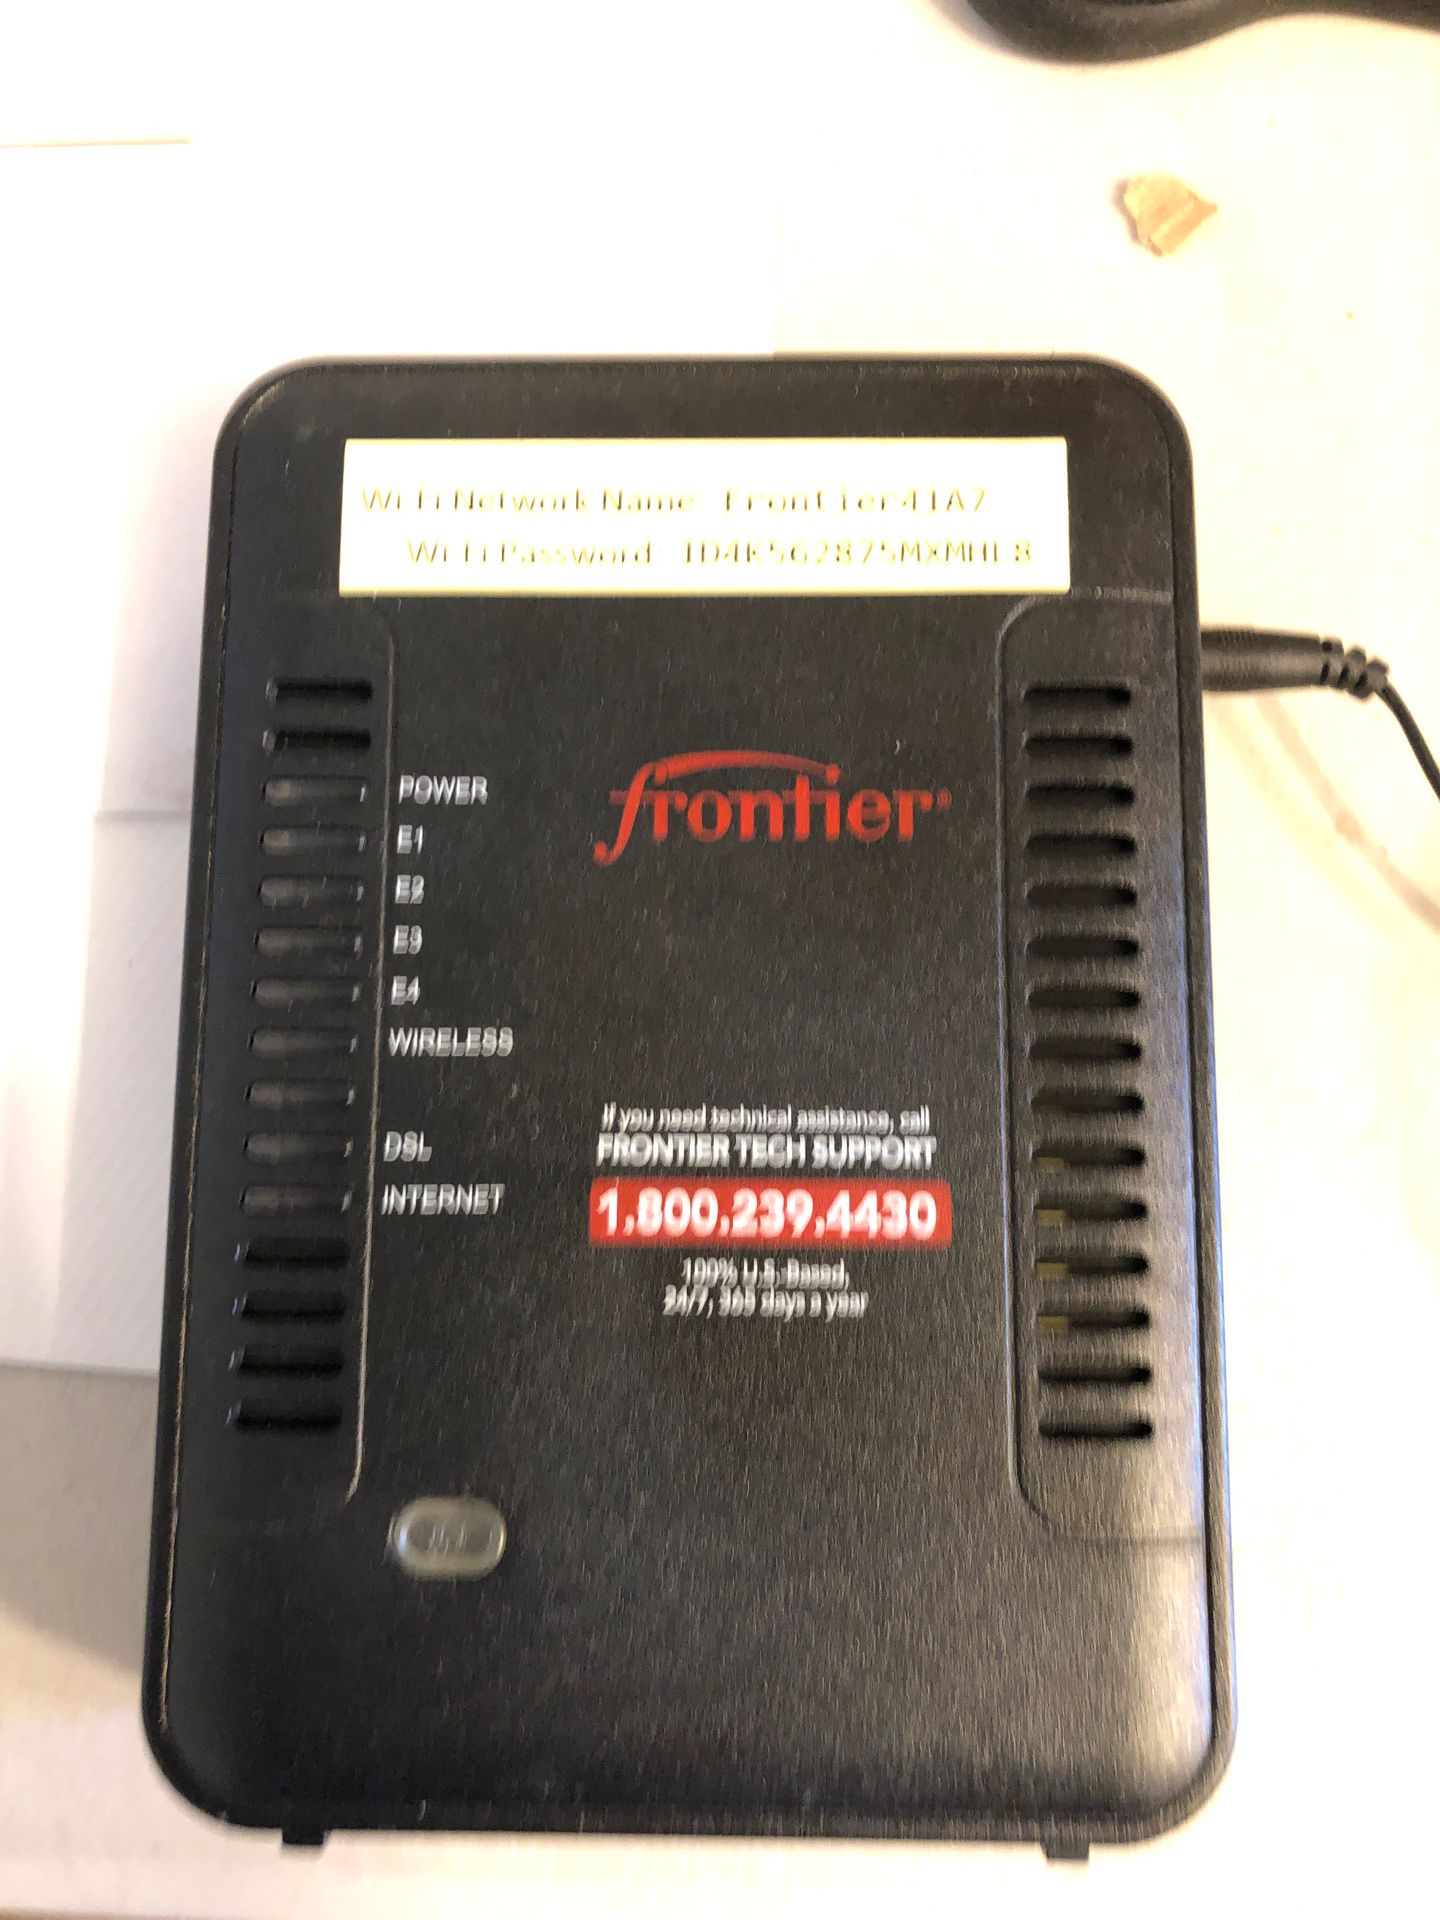 Frontier router netgear